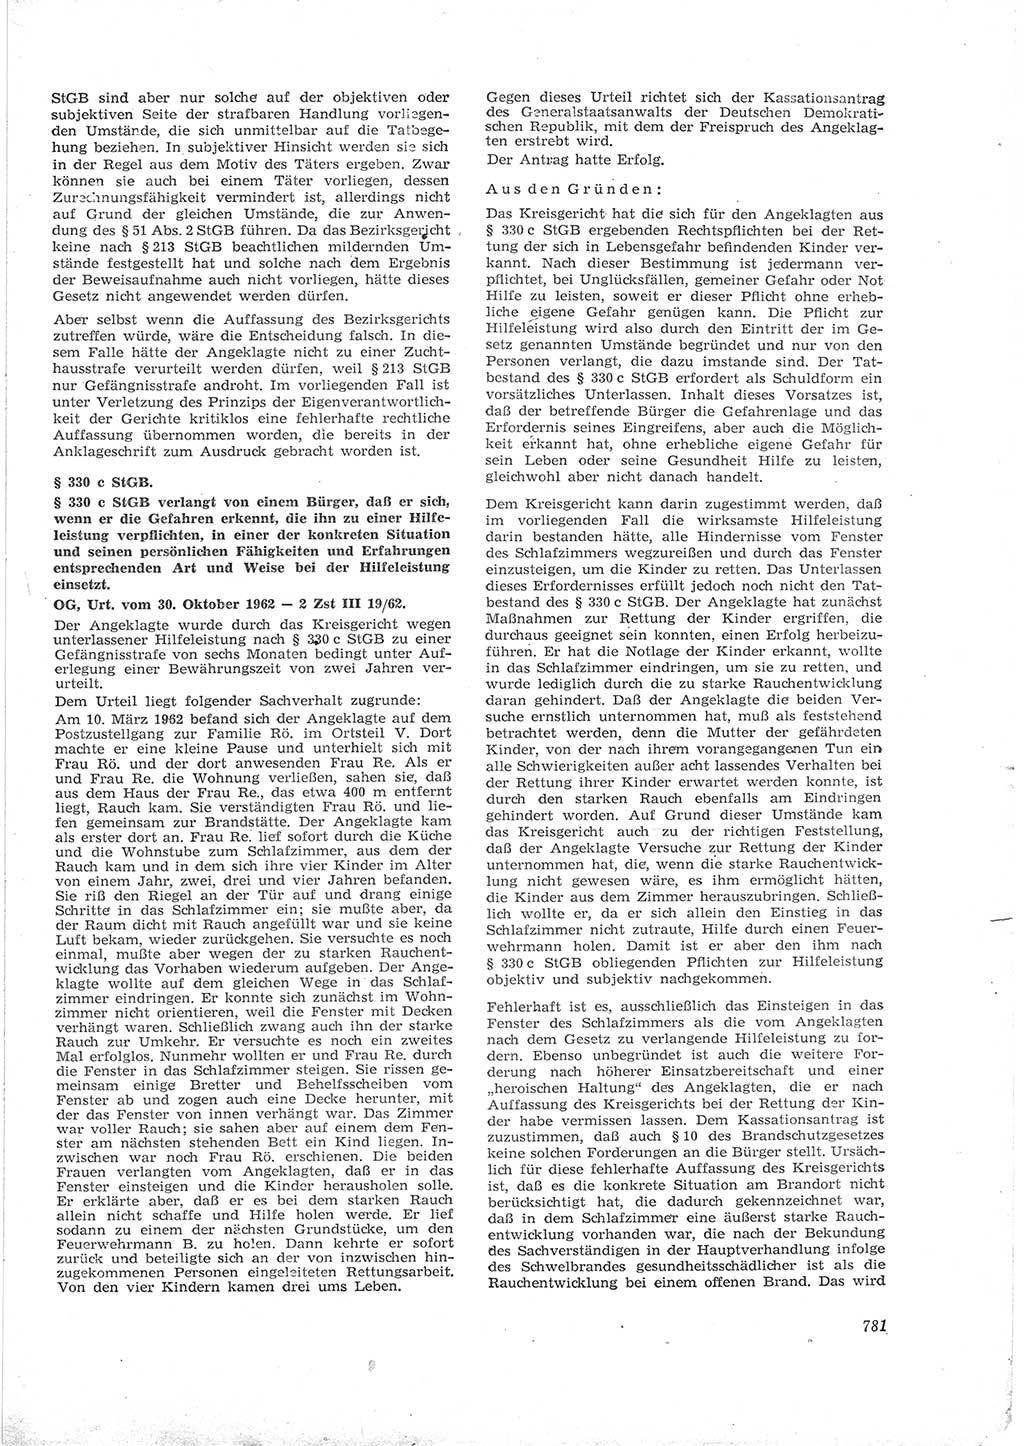 Neue Justiz (NJ), Zeitschrift für Recht und Rechtswissenschaft [Deutsche Demokratische Republik (DDR)], 16. Jahrgang 1962, Seite 781 (NJ DDR 1962, S. 781)